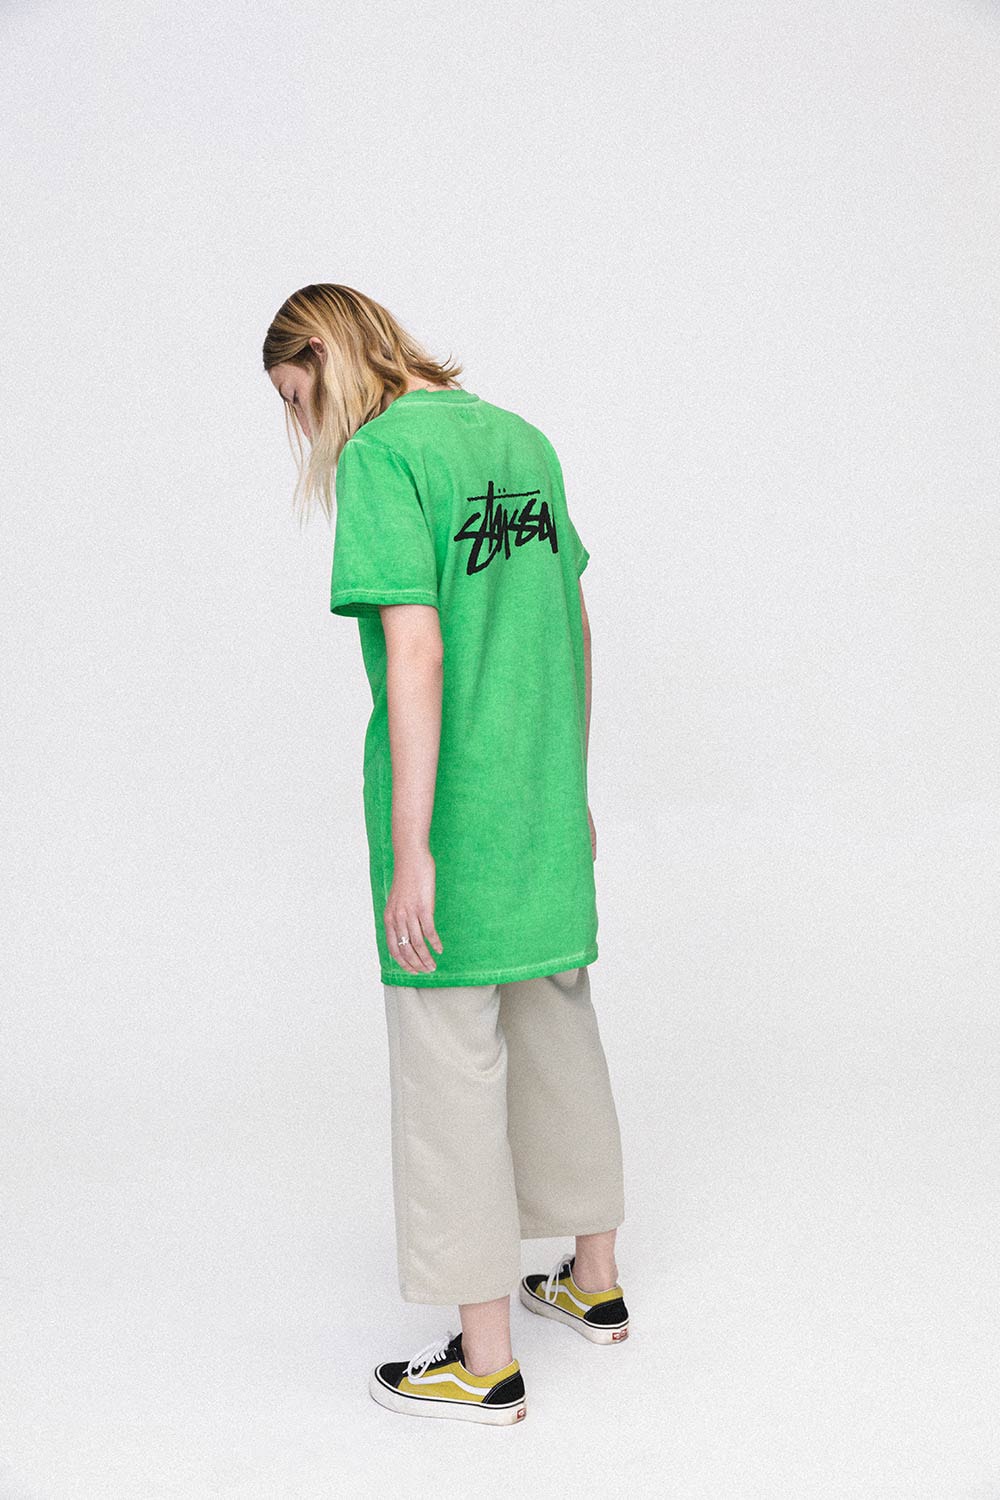 Stussy Women Summer 2018 Lookbook Green Logo T-Shirt